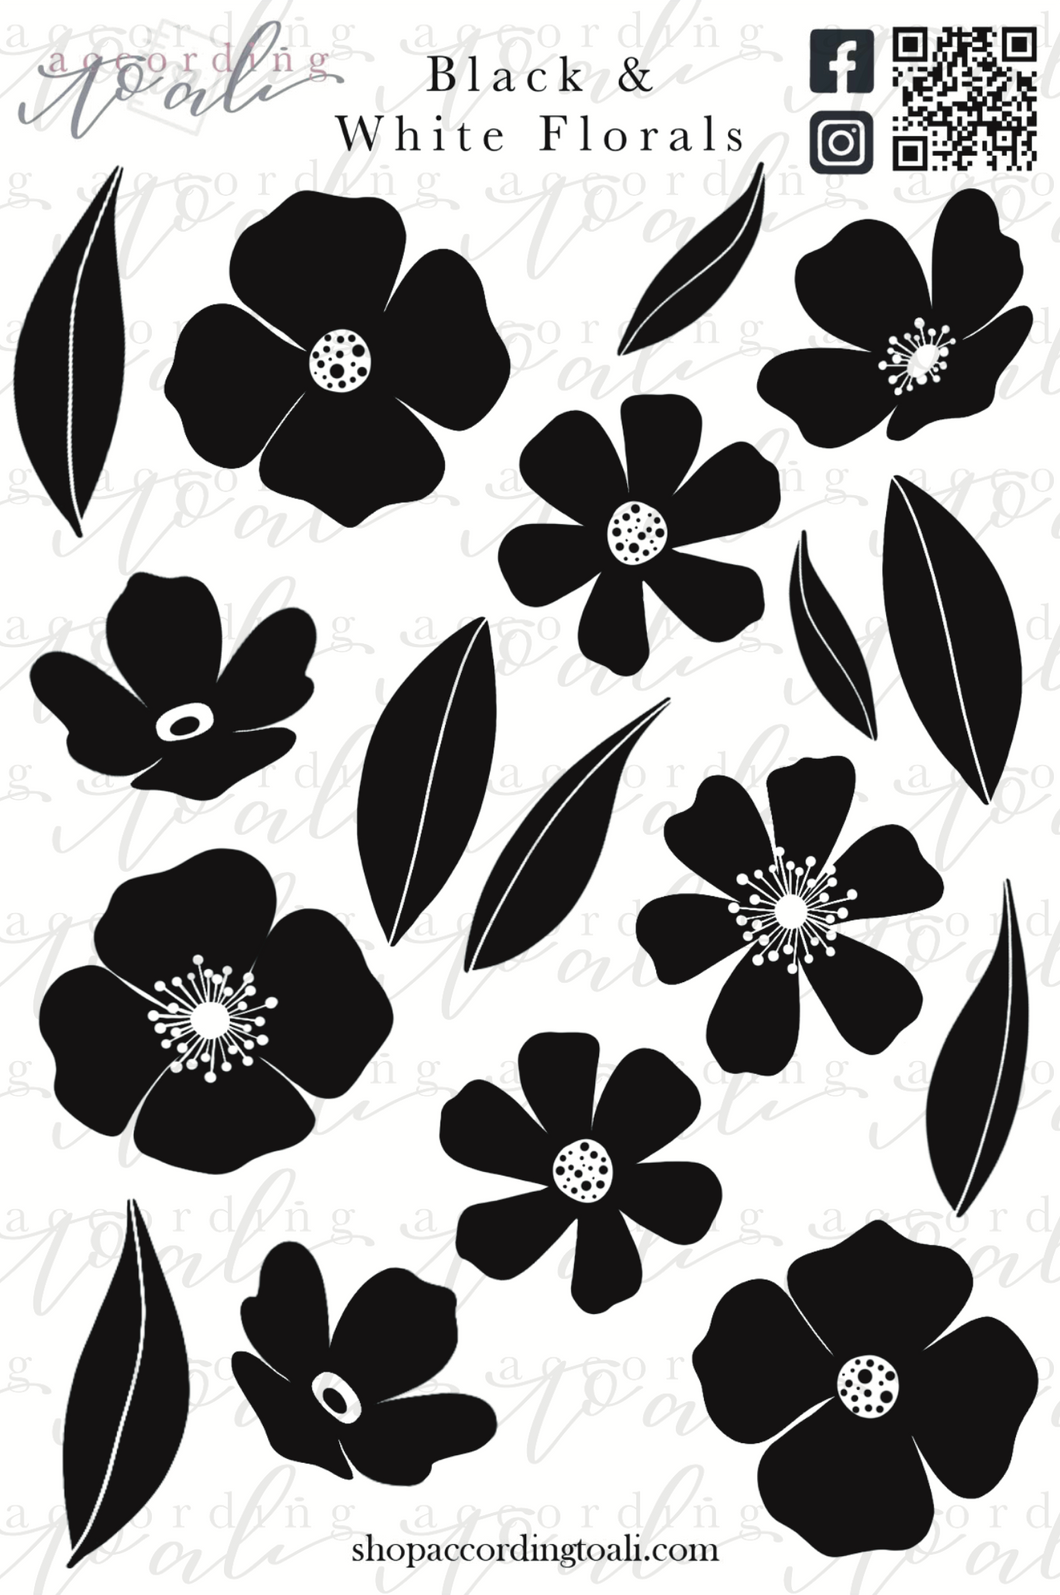 Black & White Florals